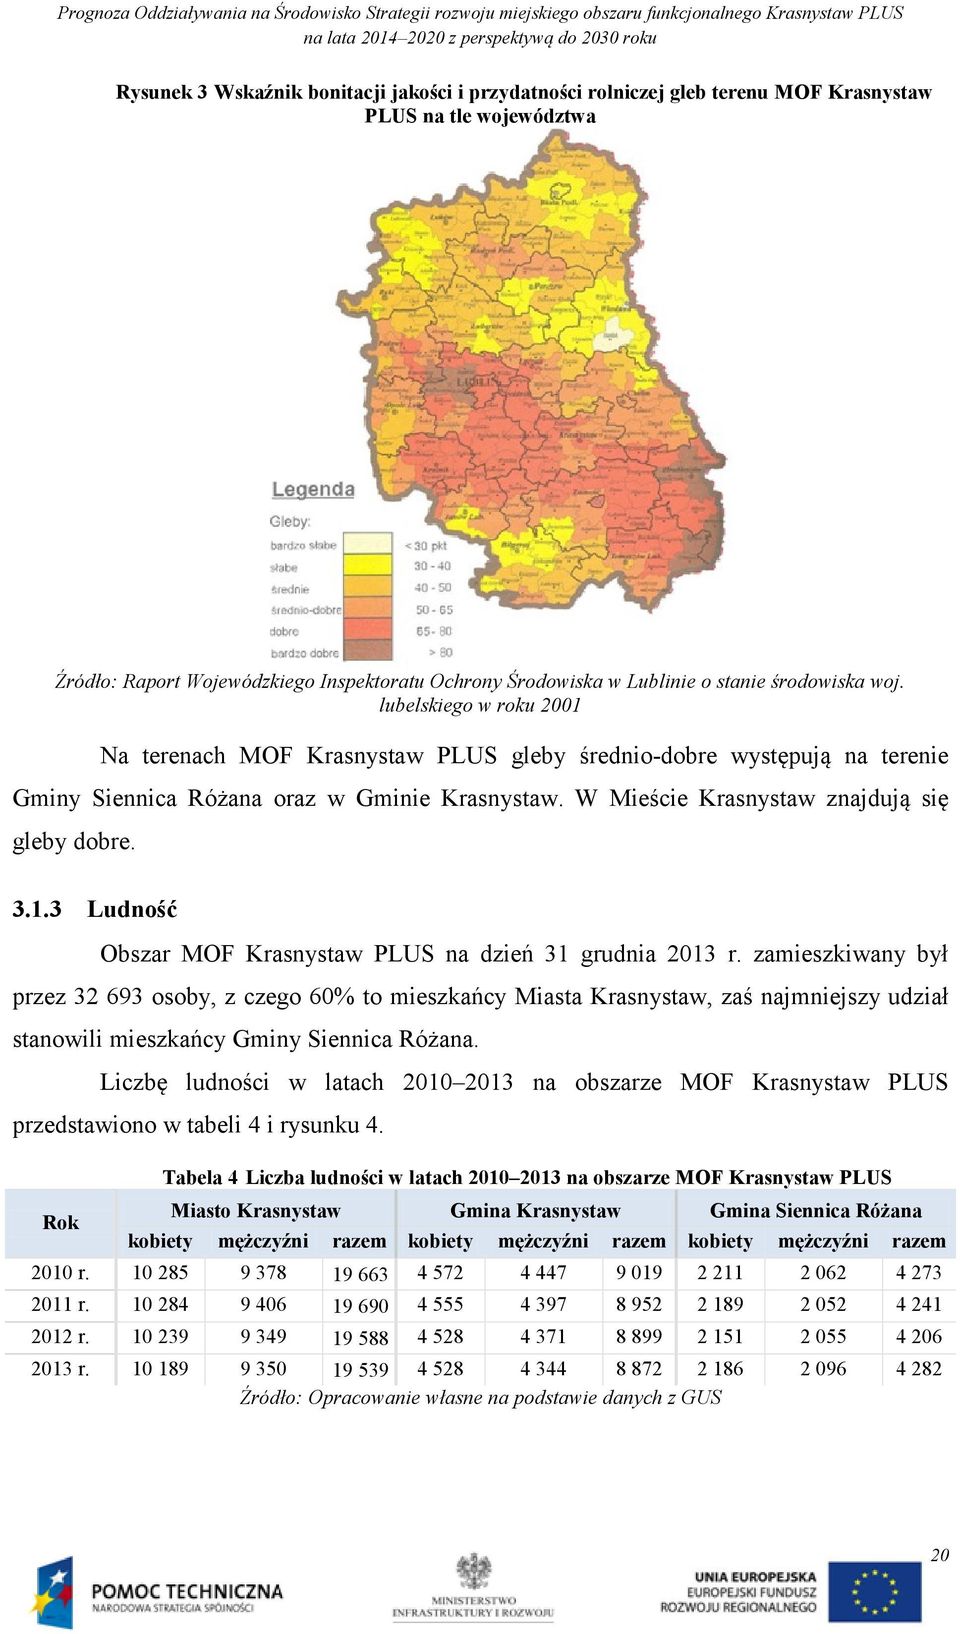 W Mieście Krasnystaw znajdują się gleby dobre. 3.1.3 Ludność Obszar MOF Krasnystaw PLUS na dzień 31 grudnia 2013 r.